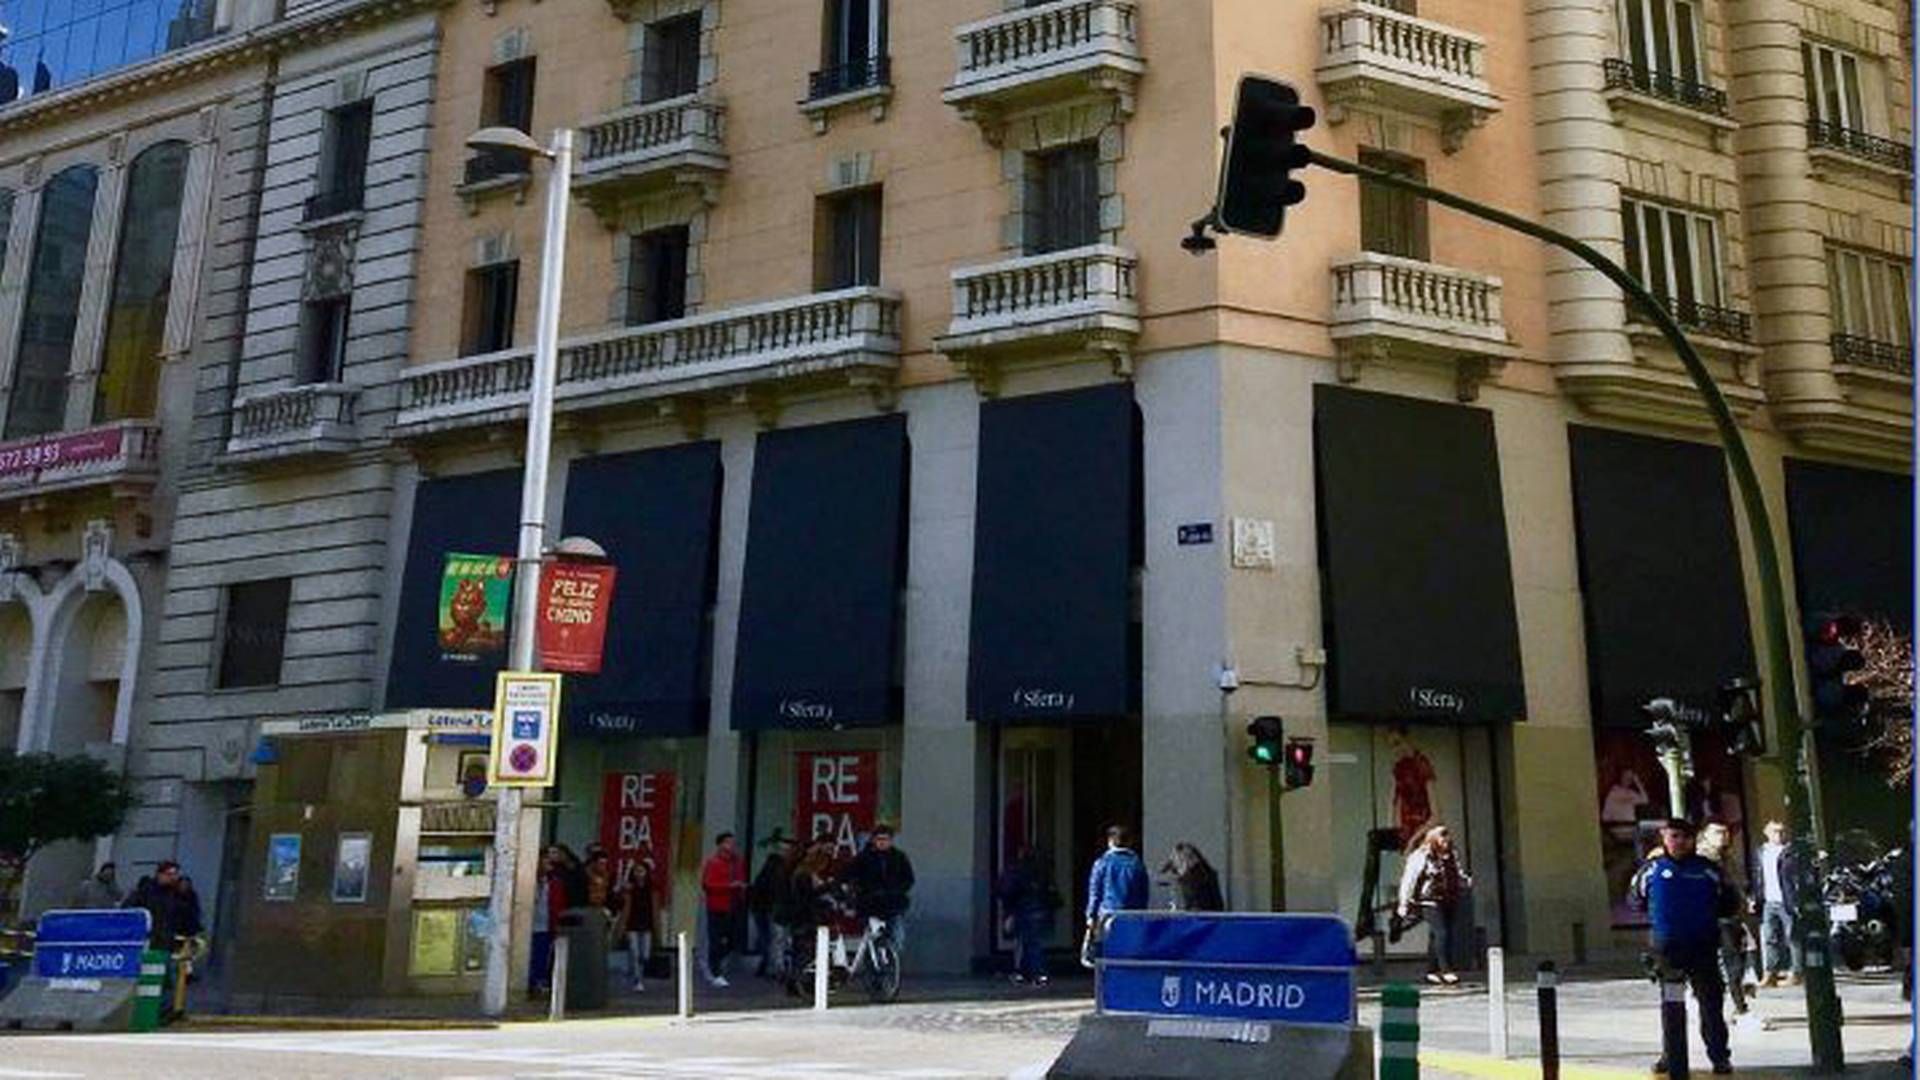 PFA køber ejendom på shoppinggade i Madrid for et trecifret millionbeløb. | Foto: PR/Thor Equities.